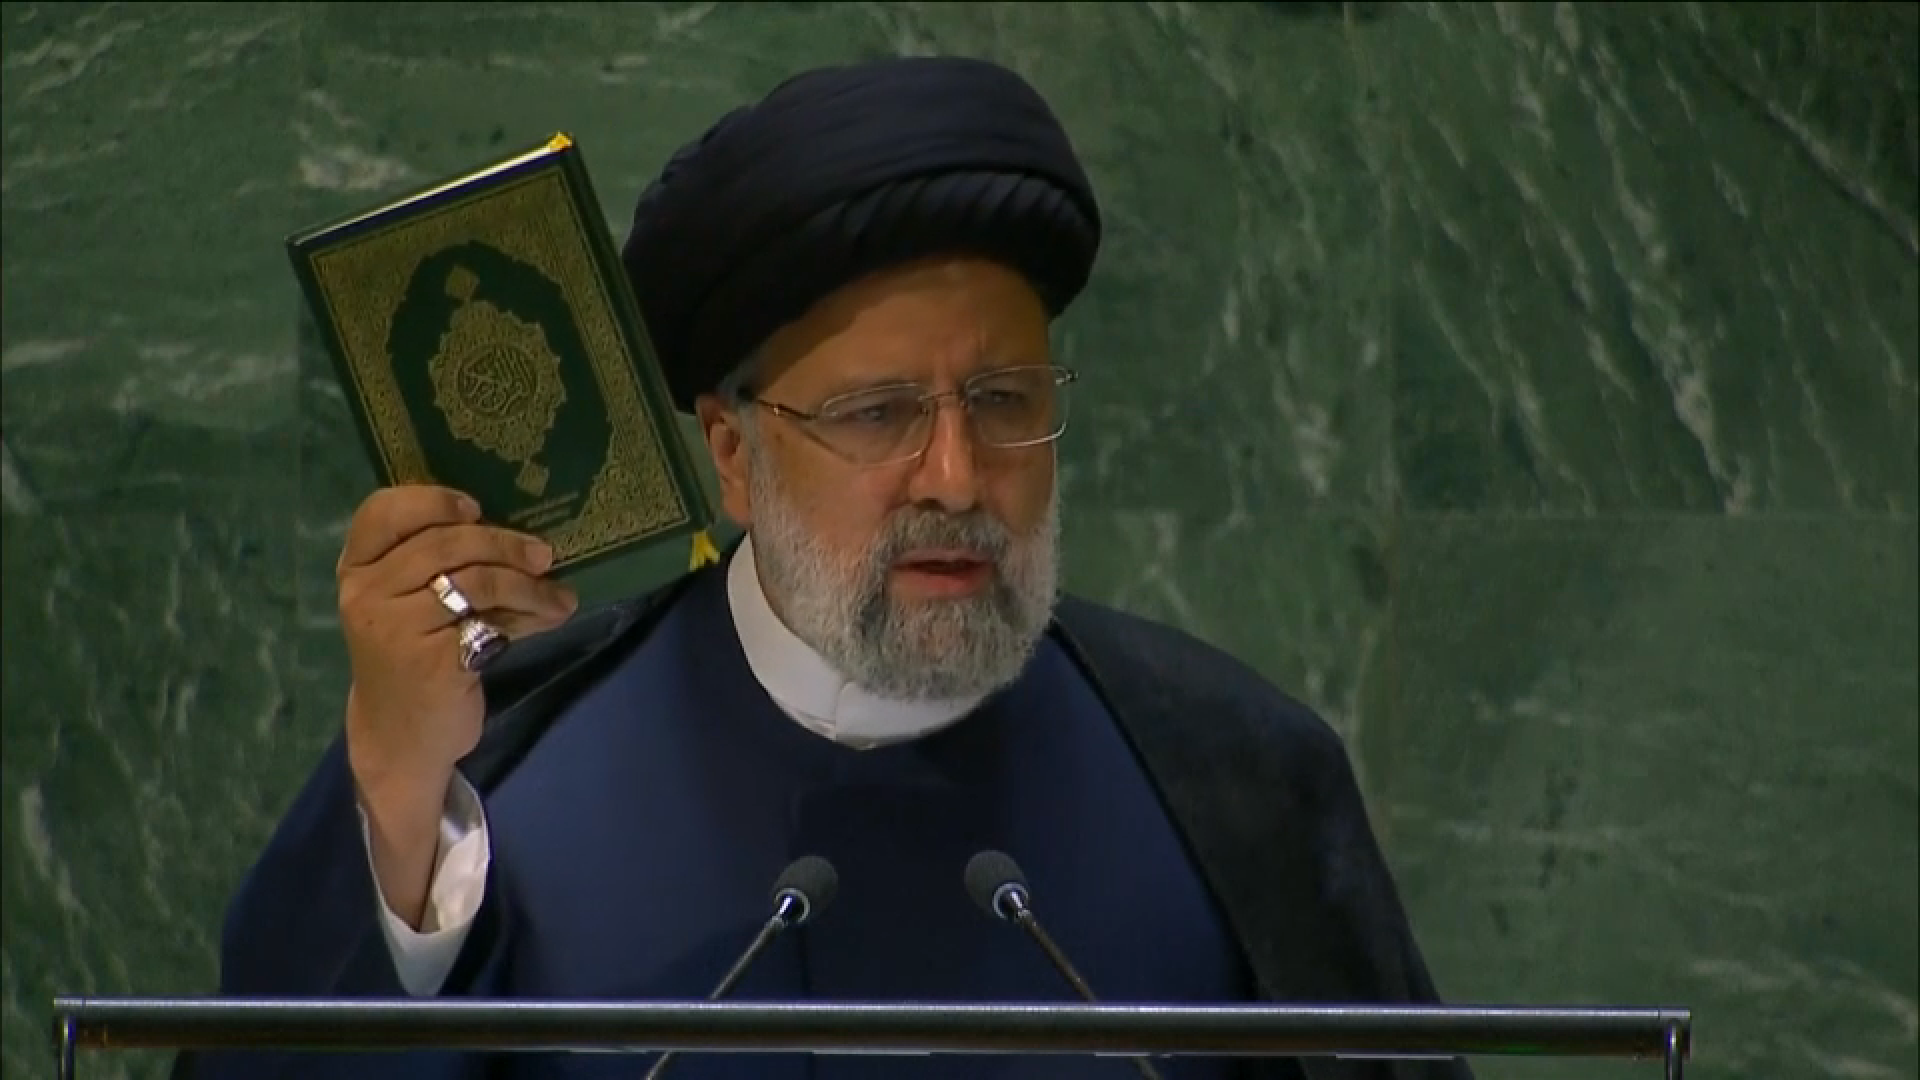 الرئيس الإيراني يرفع القرآن الكريم أمام الجمعية العامة للأمم المتحدة استنكارا لتدنيسه (فيديو)